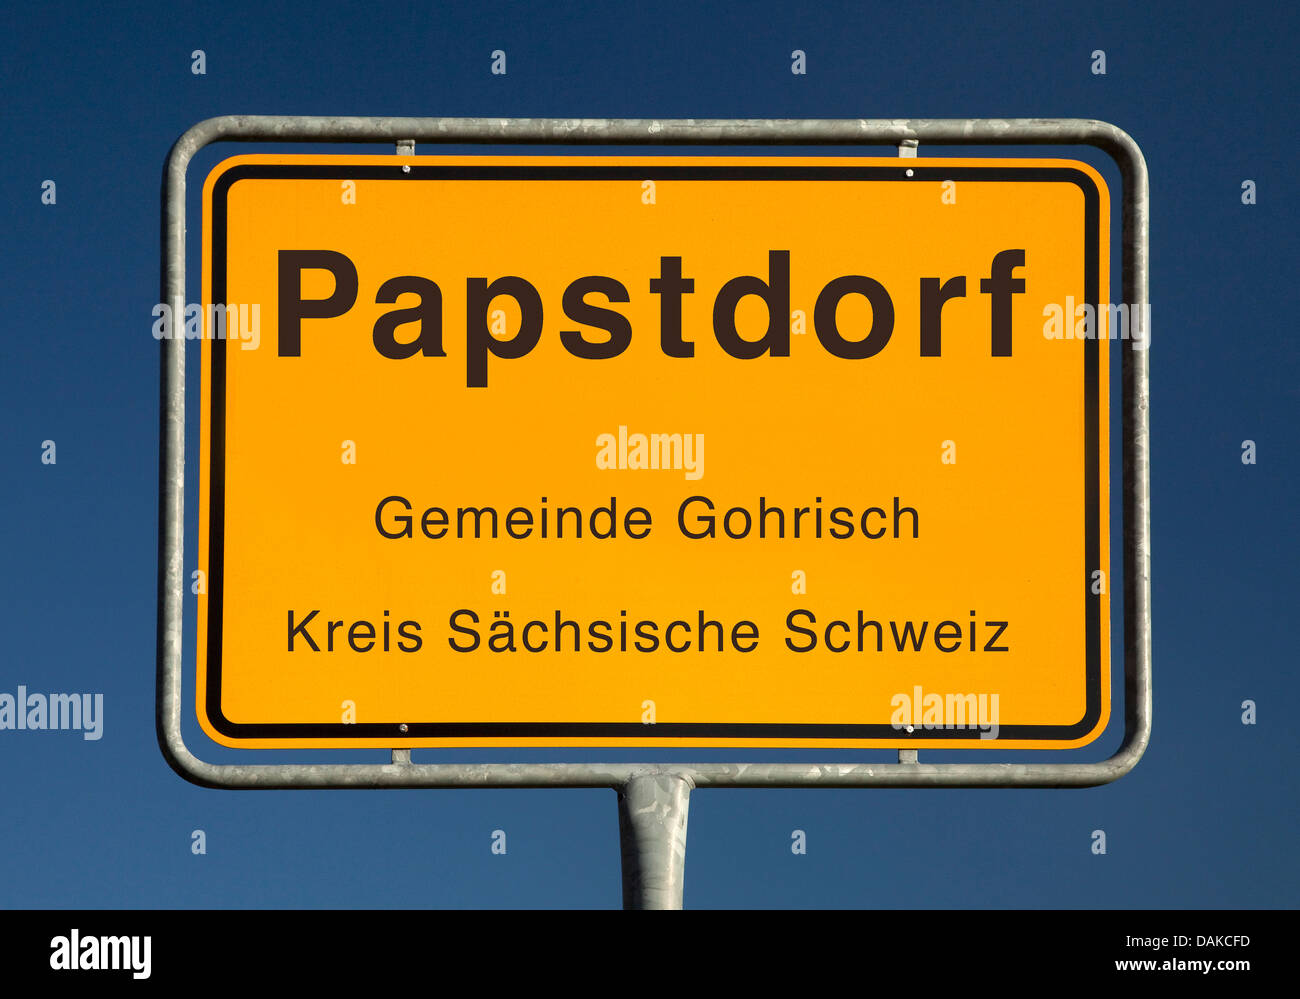 Papstdorf statt Namensschild, Papstdorf, Kreis Saechsische Schweiz, Sachsen, Deutschland Stockfoto